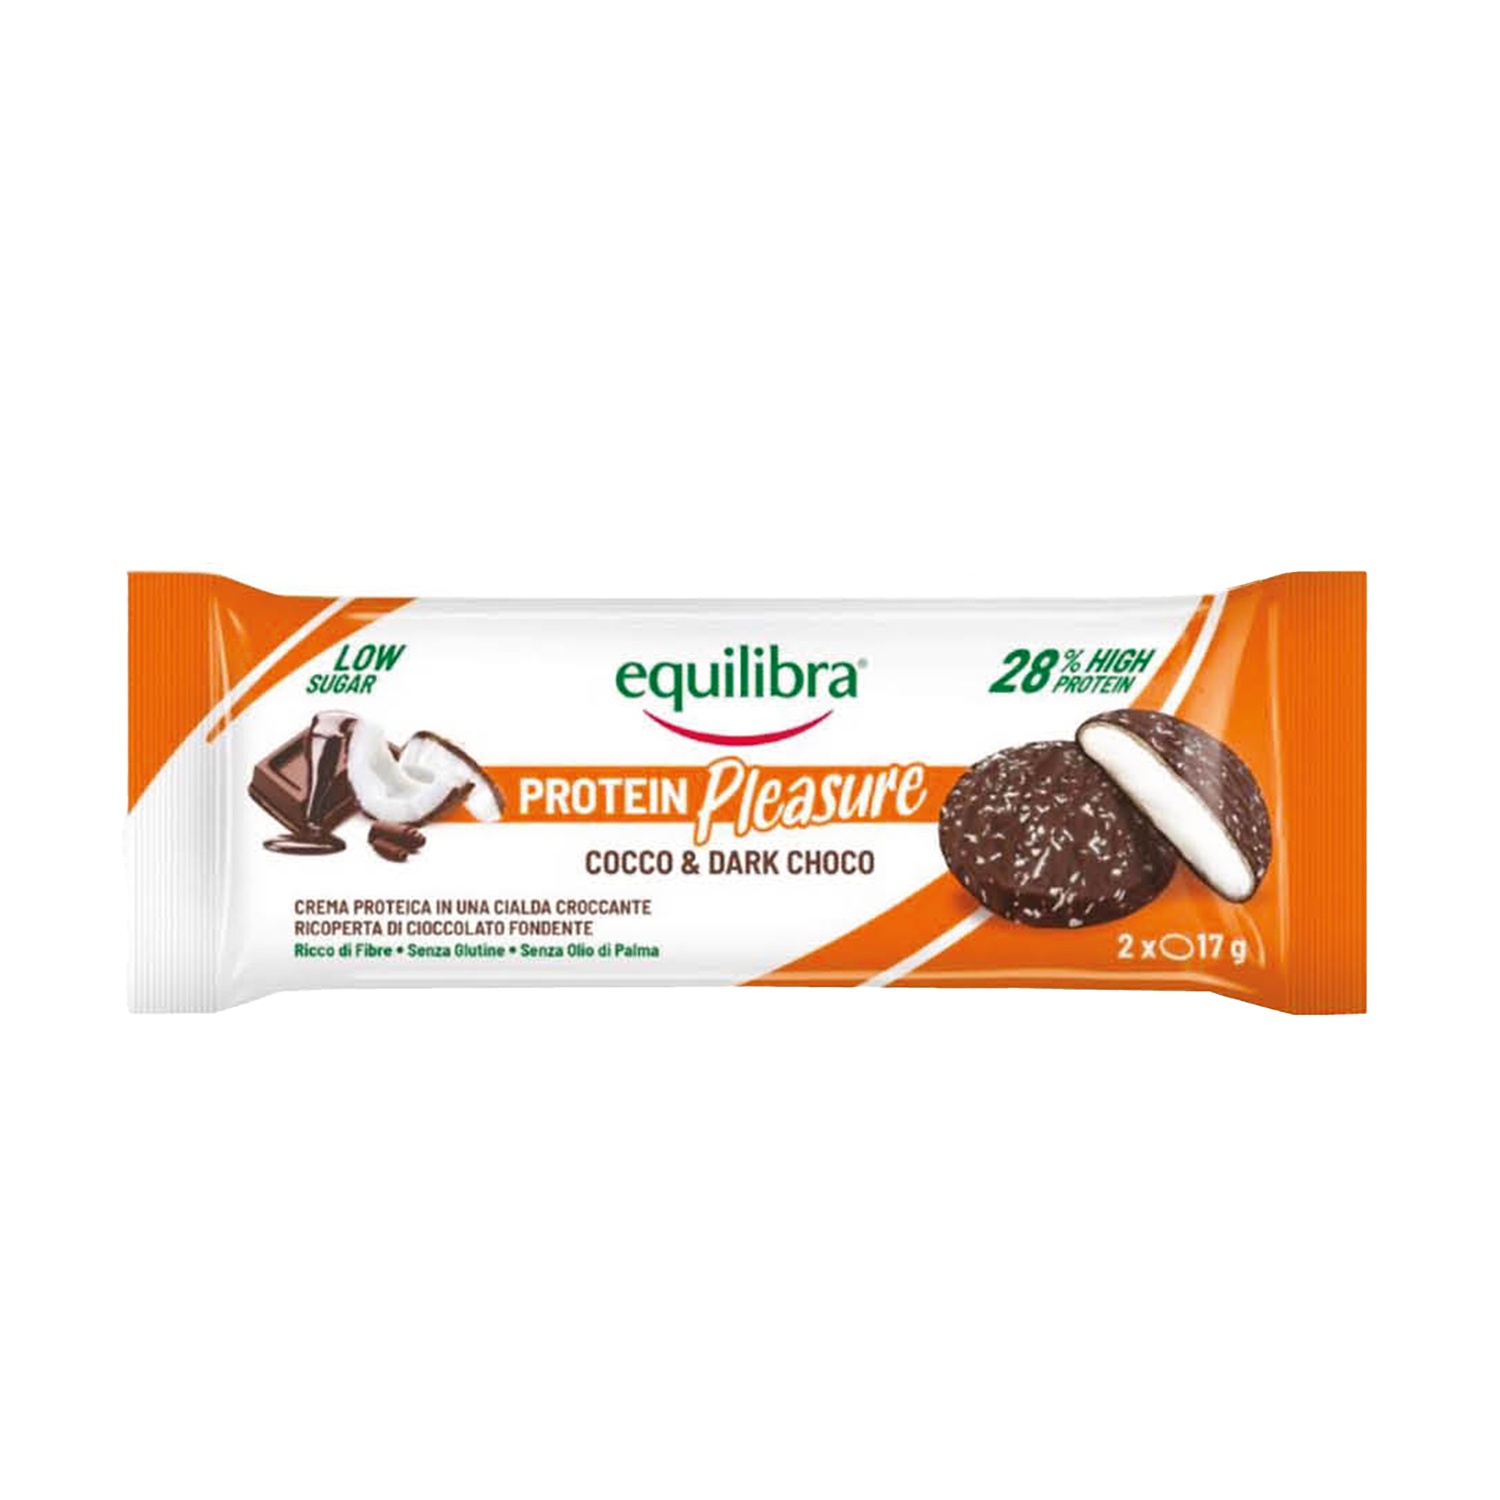 EQUILIBRA Protein Pleasure cocco e cioccolato fondente